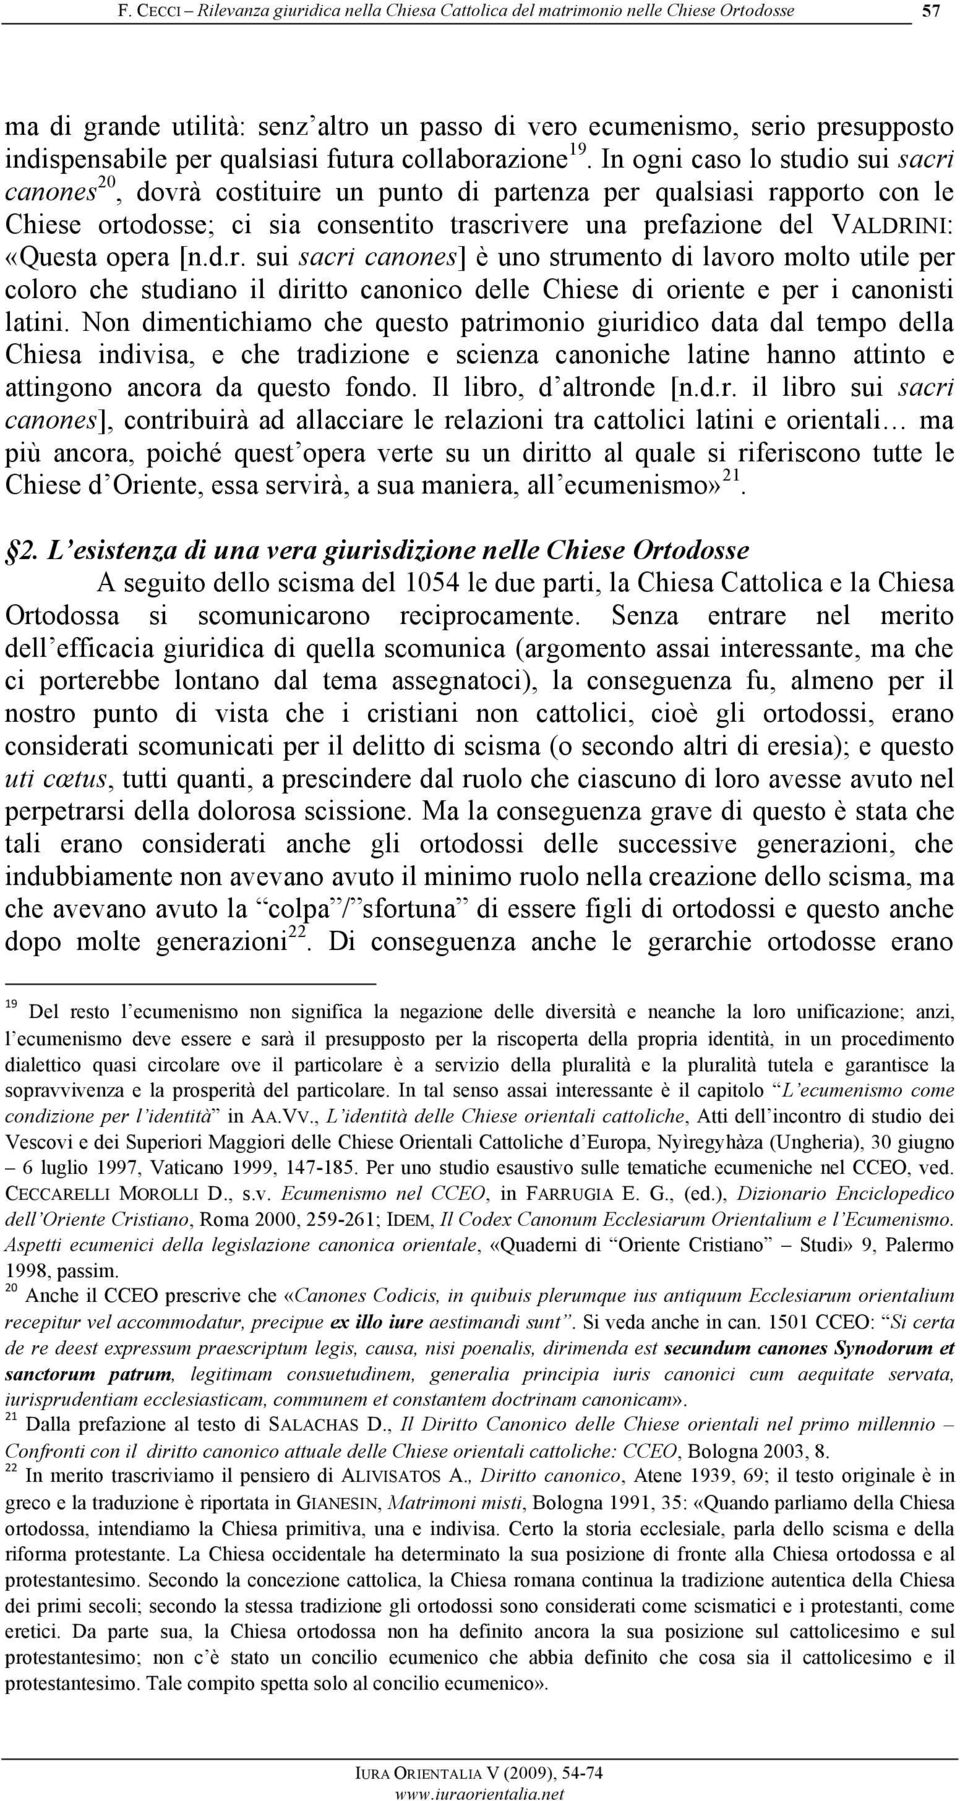 opera [n.d.r. sui sacri canones] è uno strumento di lavoro molto utile per coloro che studiano il diritto canonico delle Chiese di oriente e per i canonisti latini.